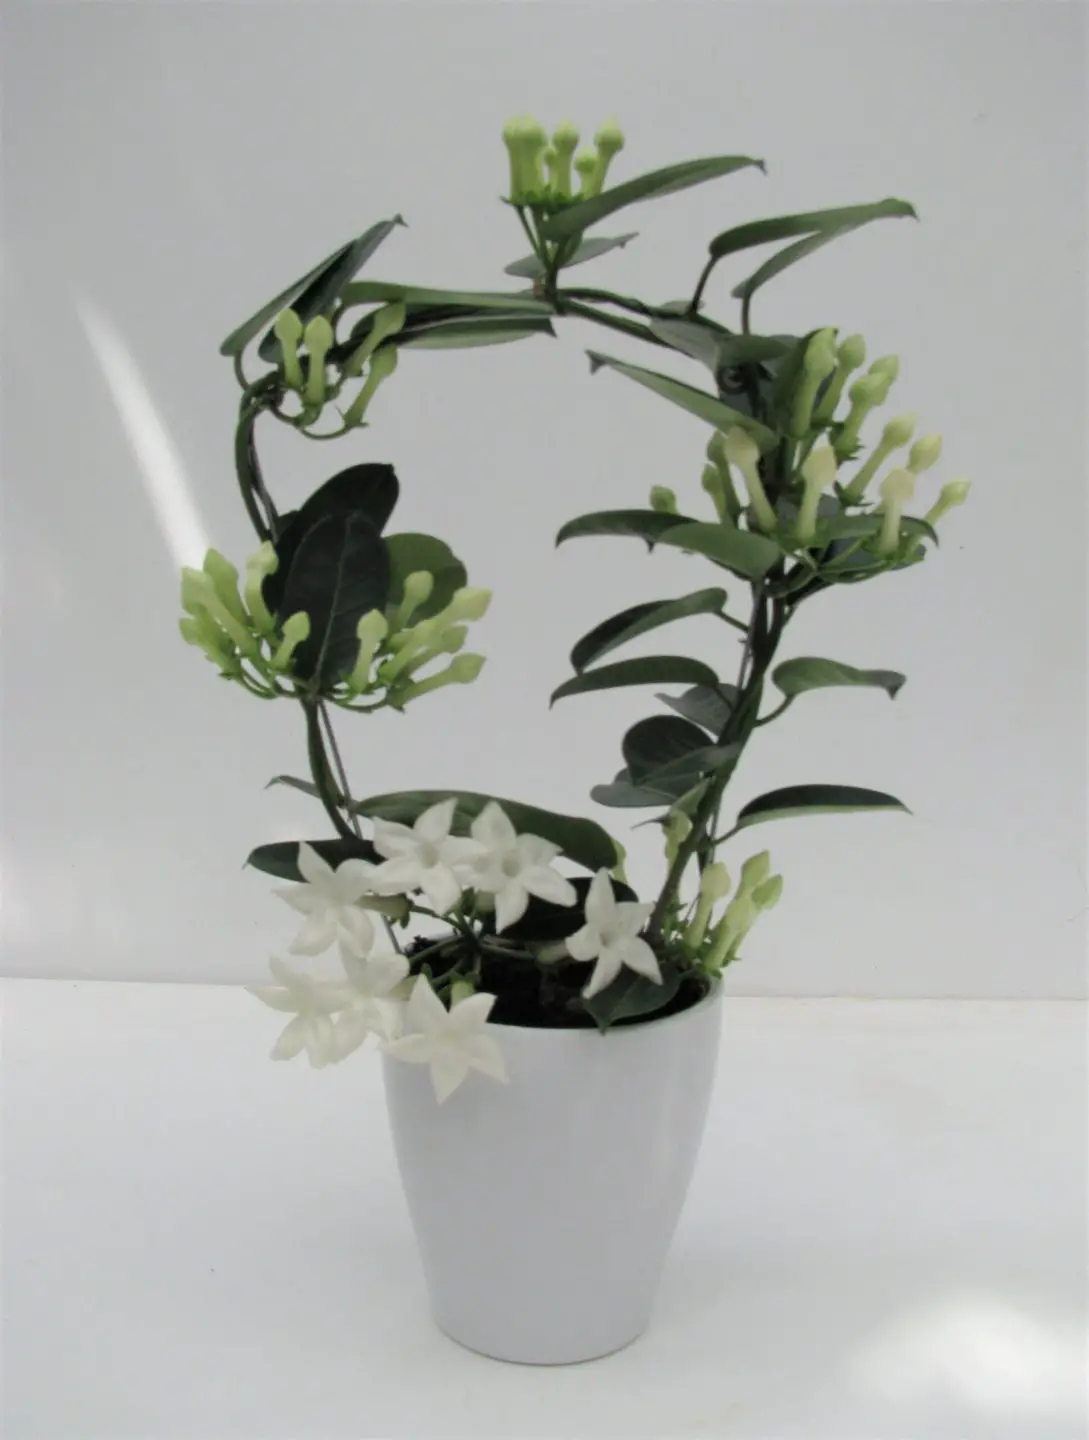 Plantas de interior con flor blanca 